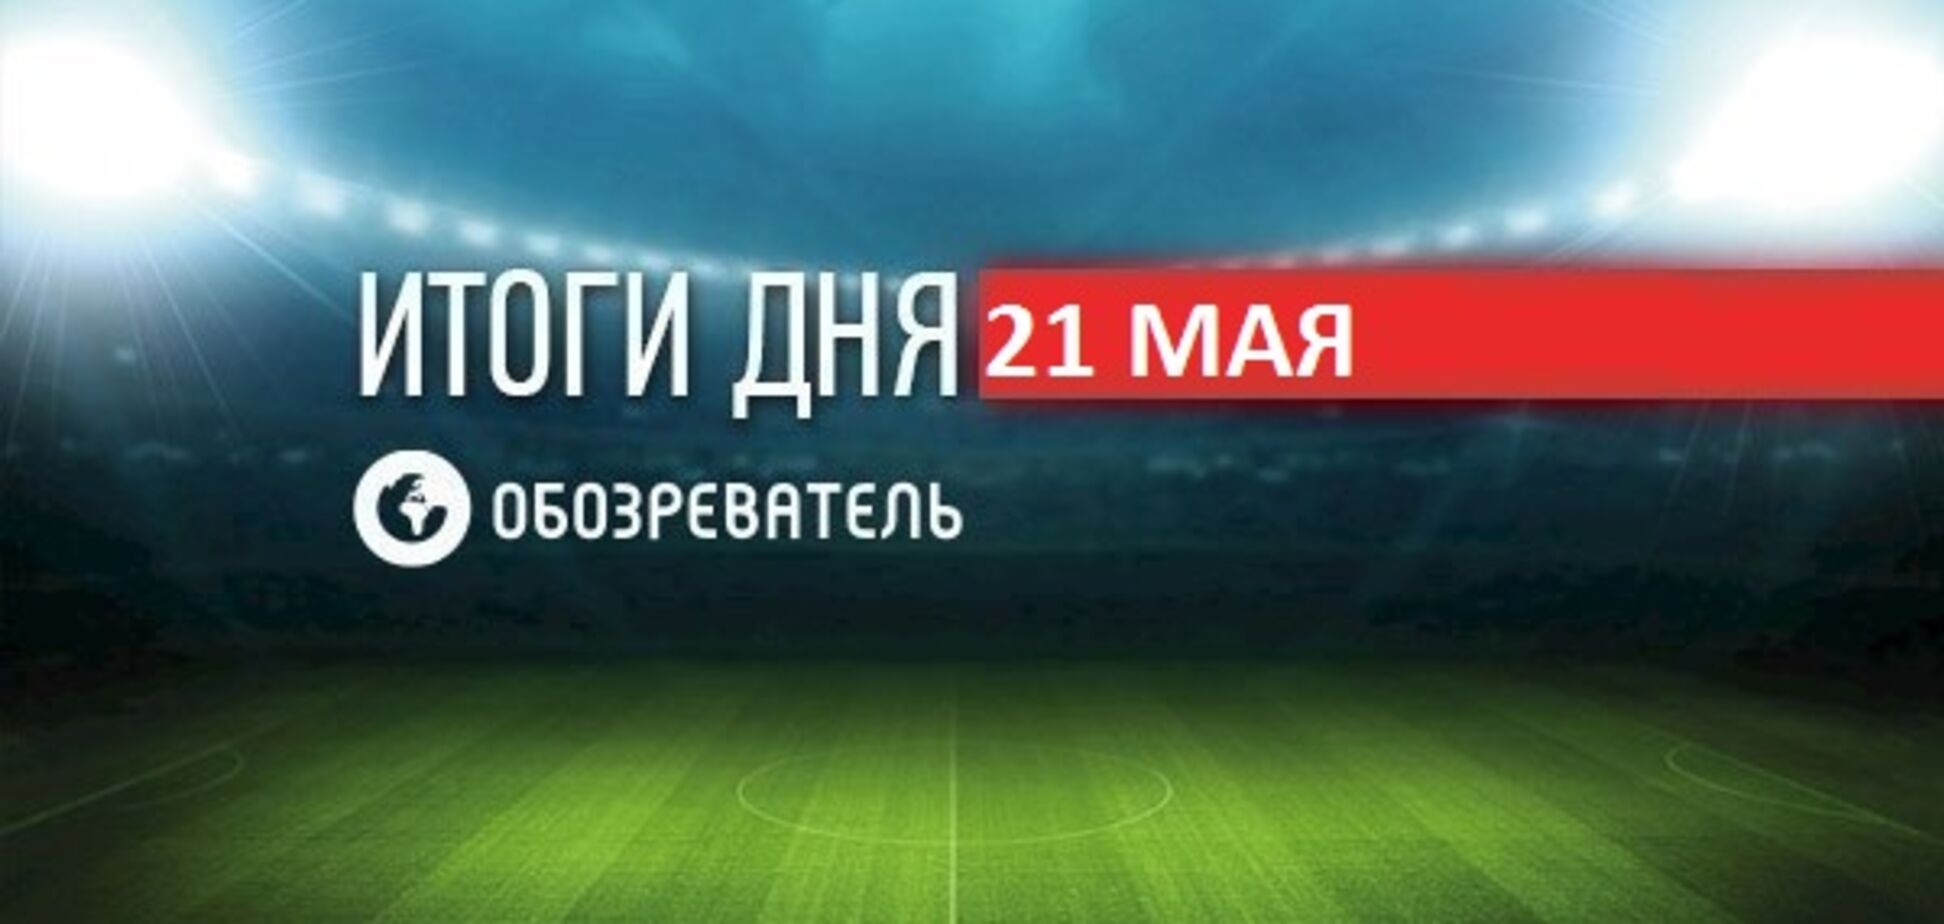 СМИ выяснили, где пройдет бой Усик - Гассиев: спортивные итоги 21 мая